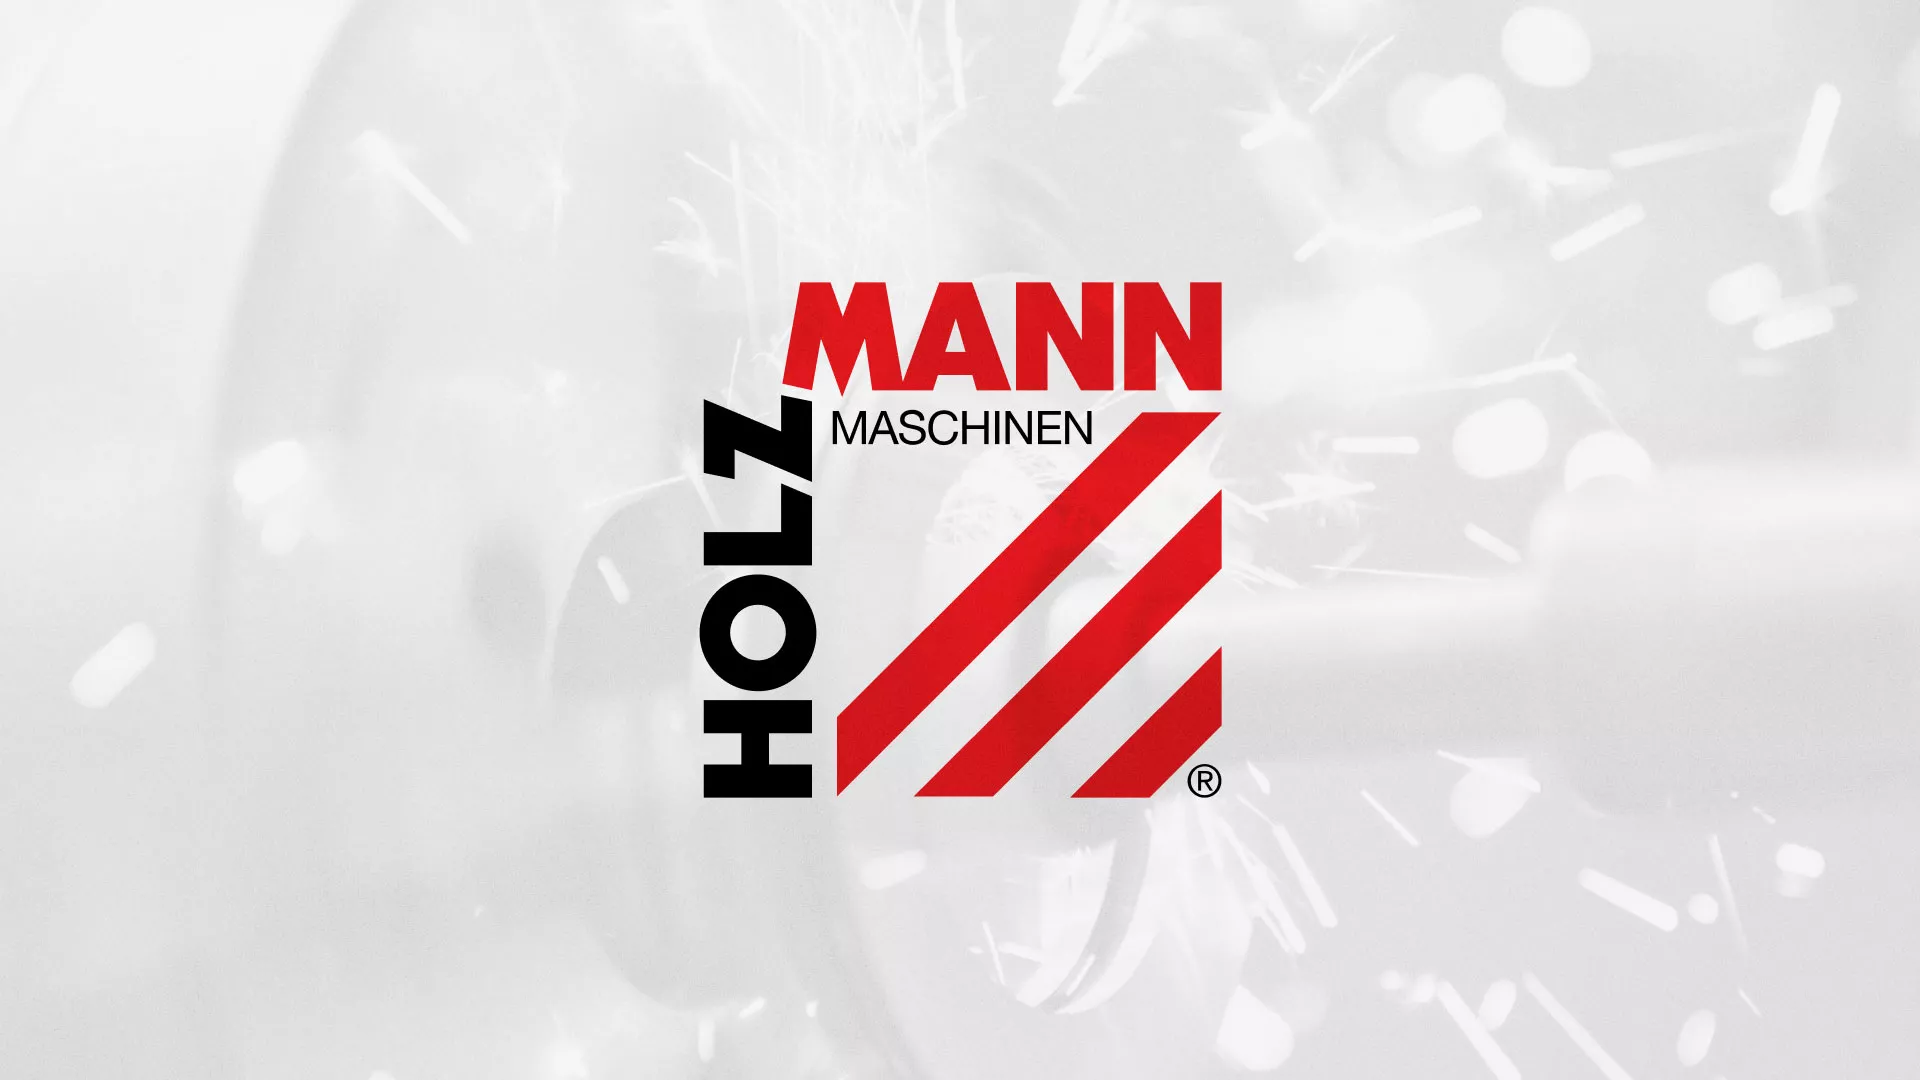 Создание сайта компании «HOLZMANN Maschinen GmbH» в Щиграх